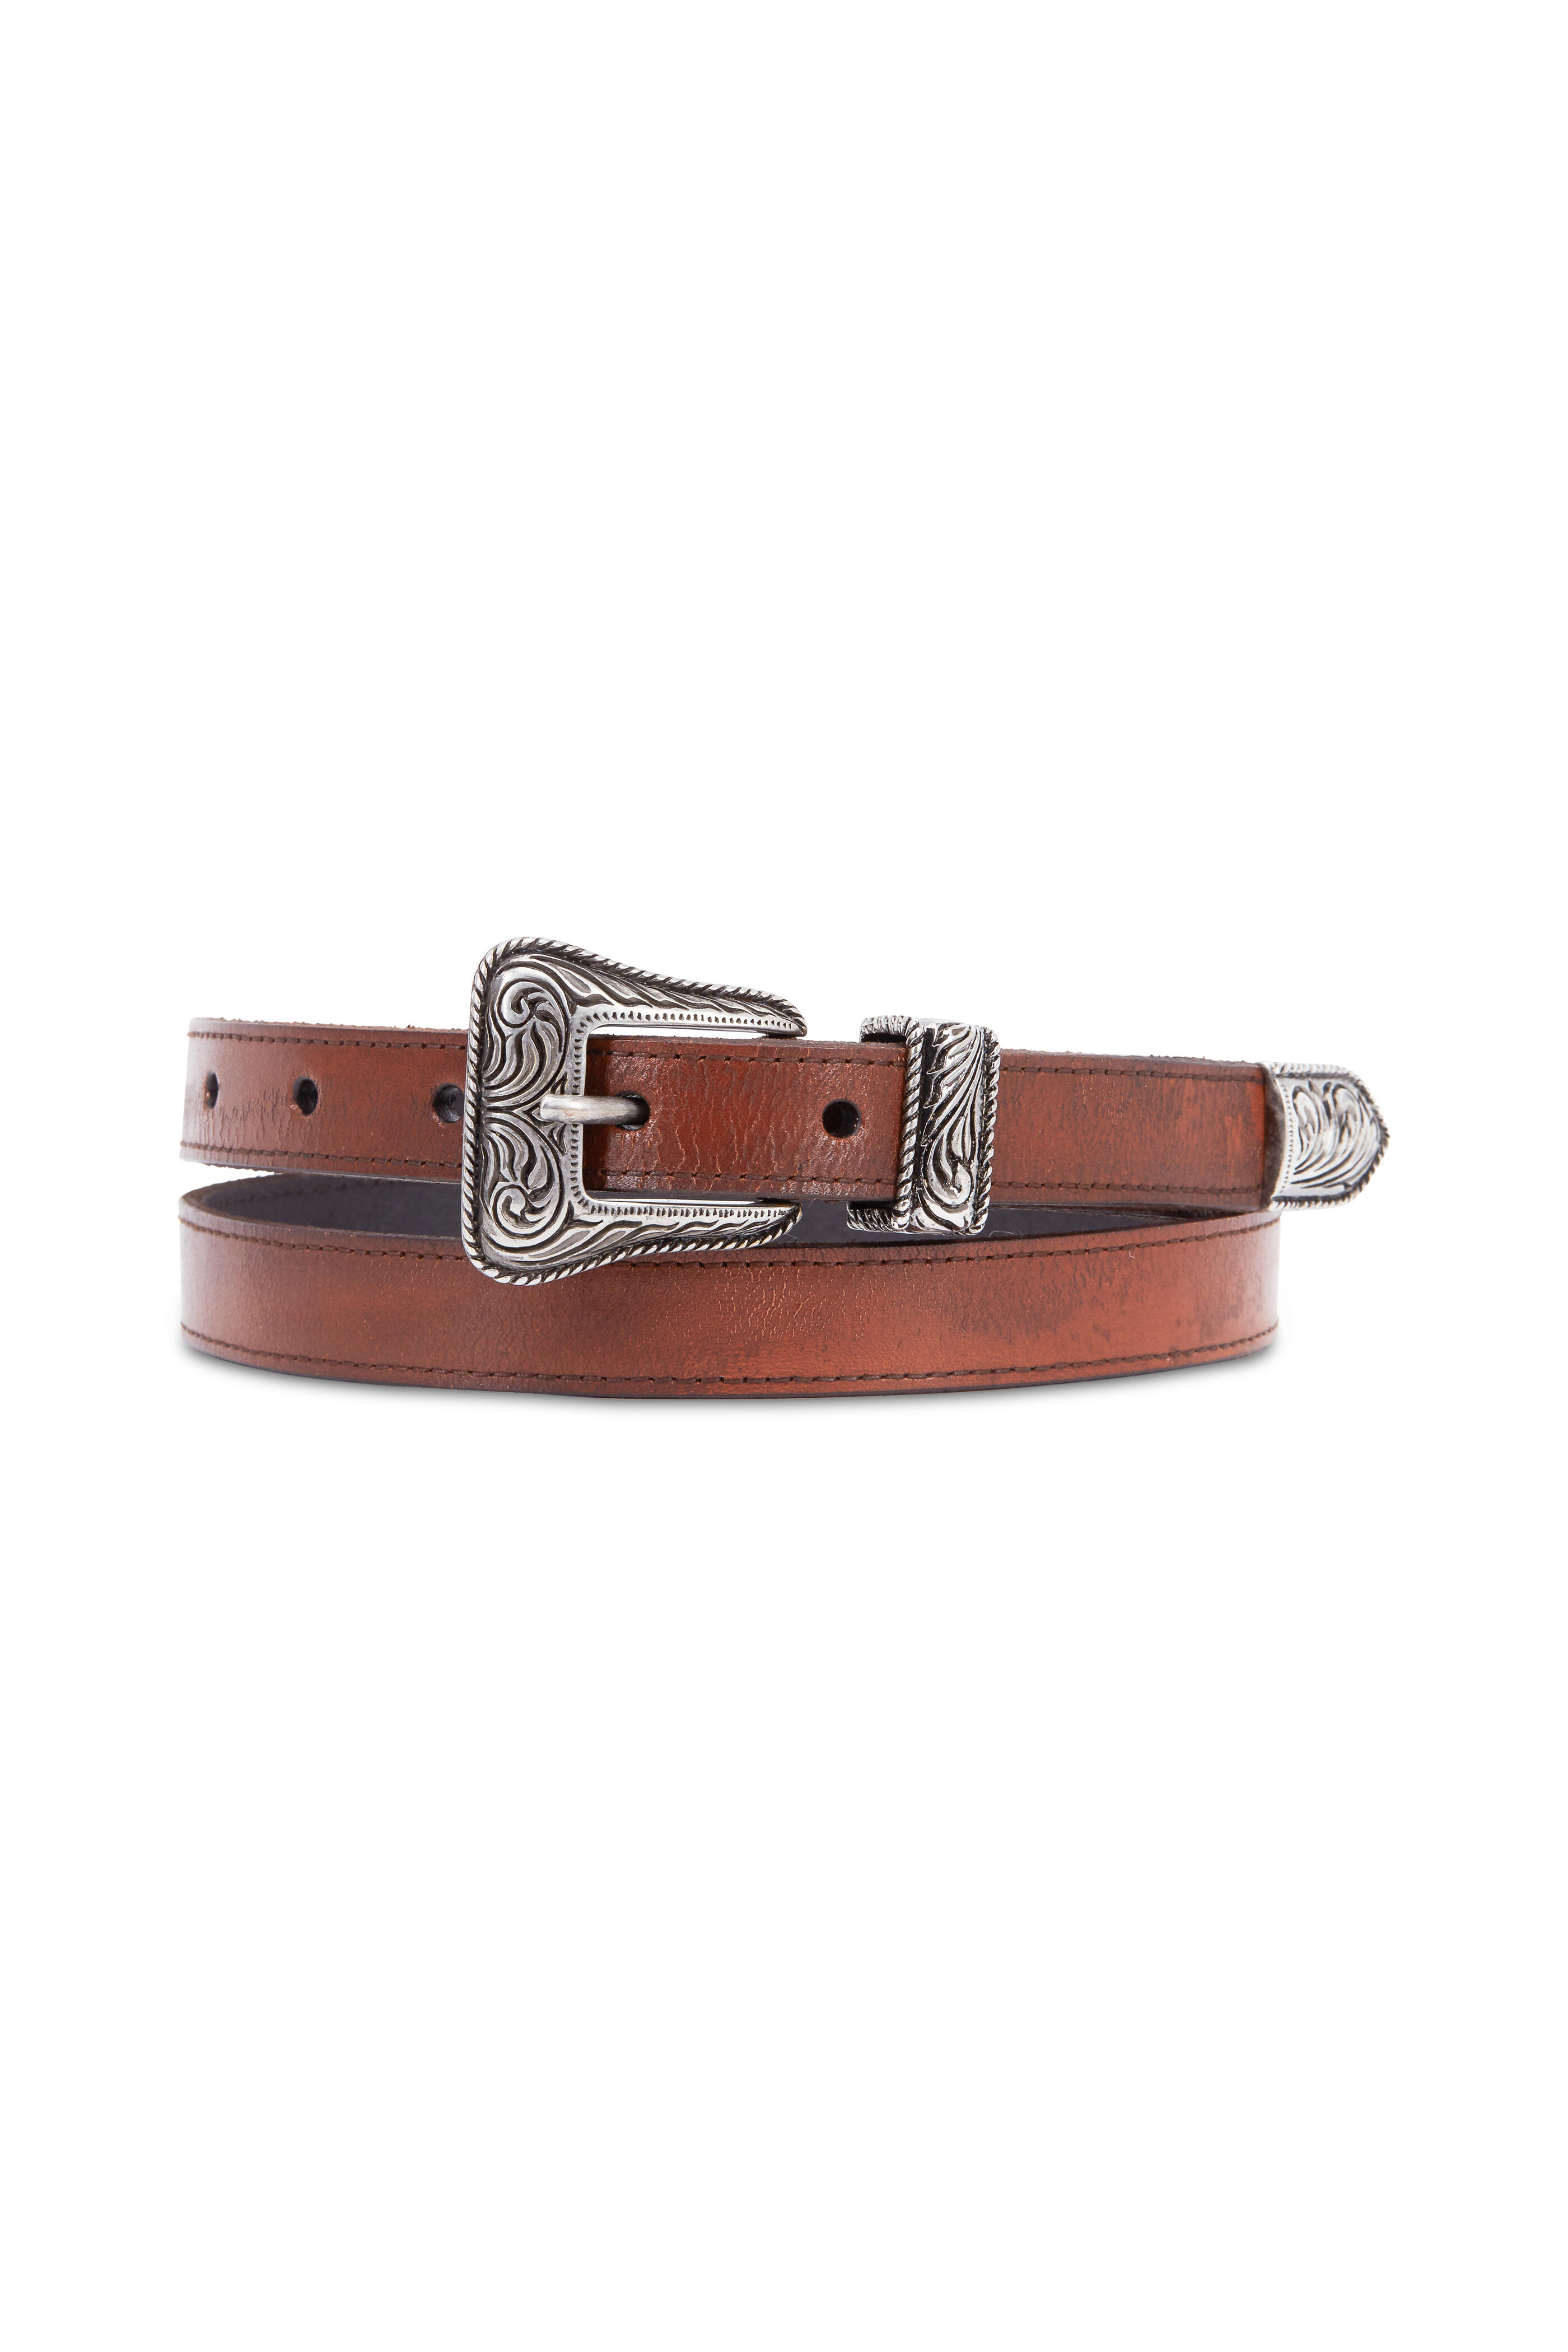 Saint Laurent - Brown Leather & Vintage Nickel Western Belt